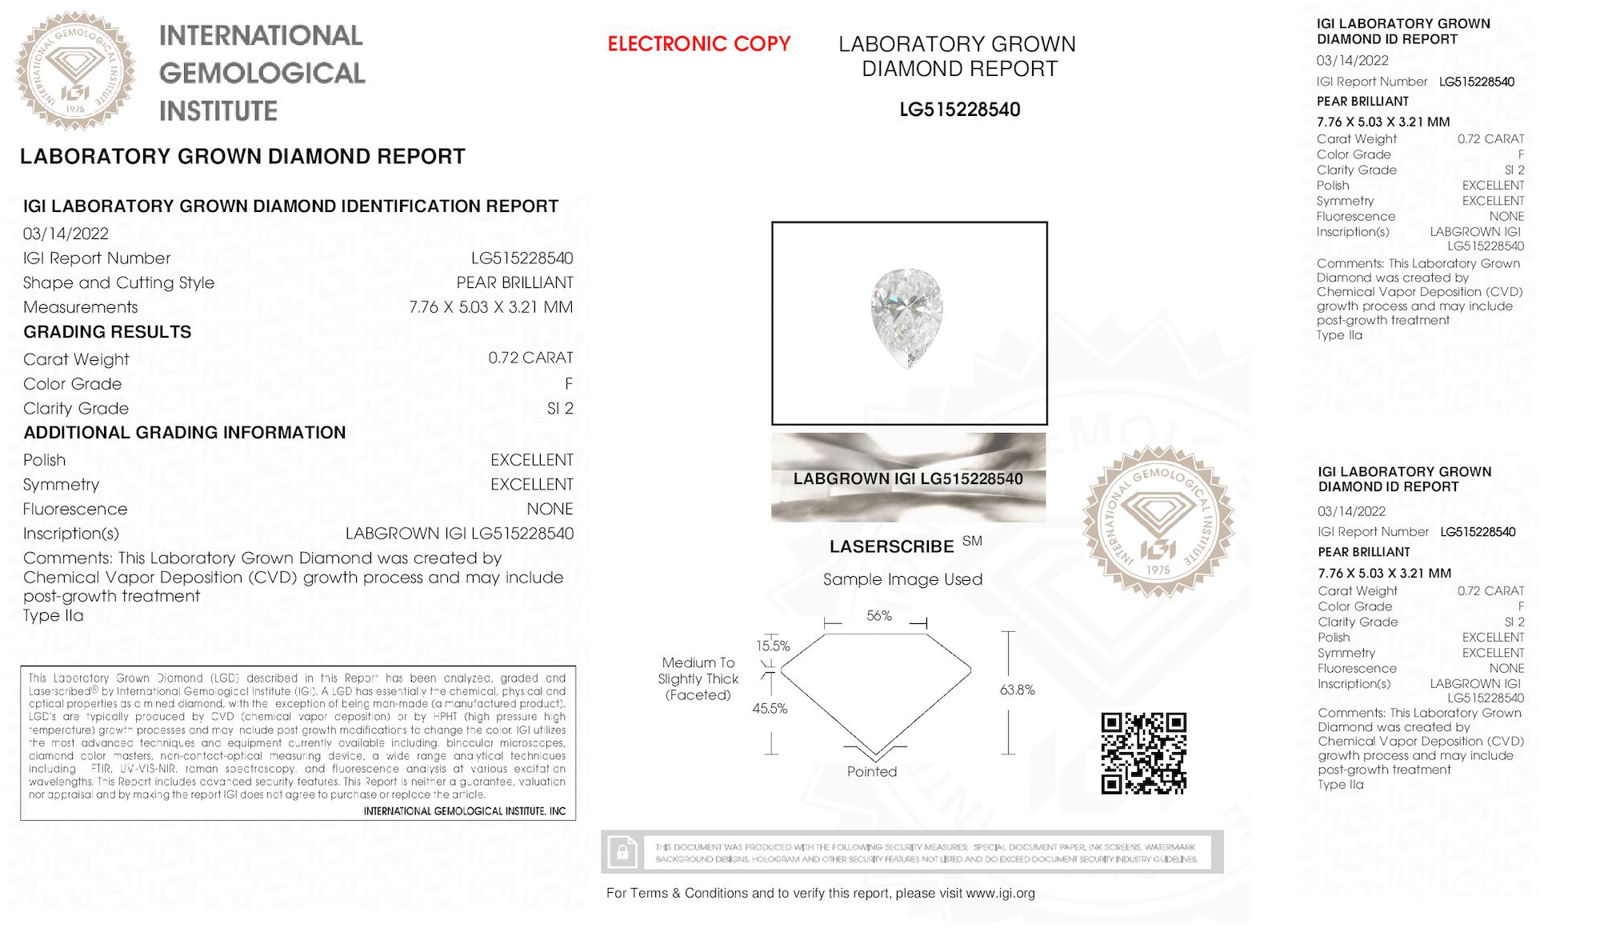 Certificate of diamond 0.72 Carat Pear Diamond